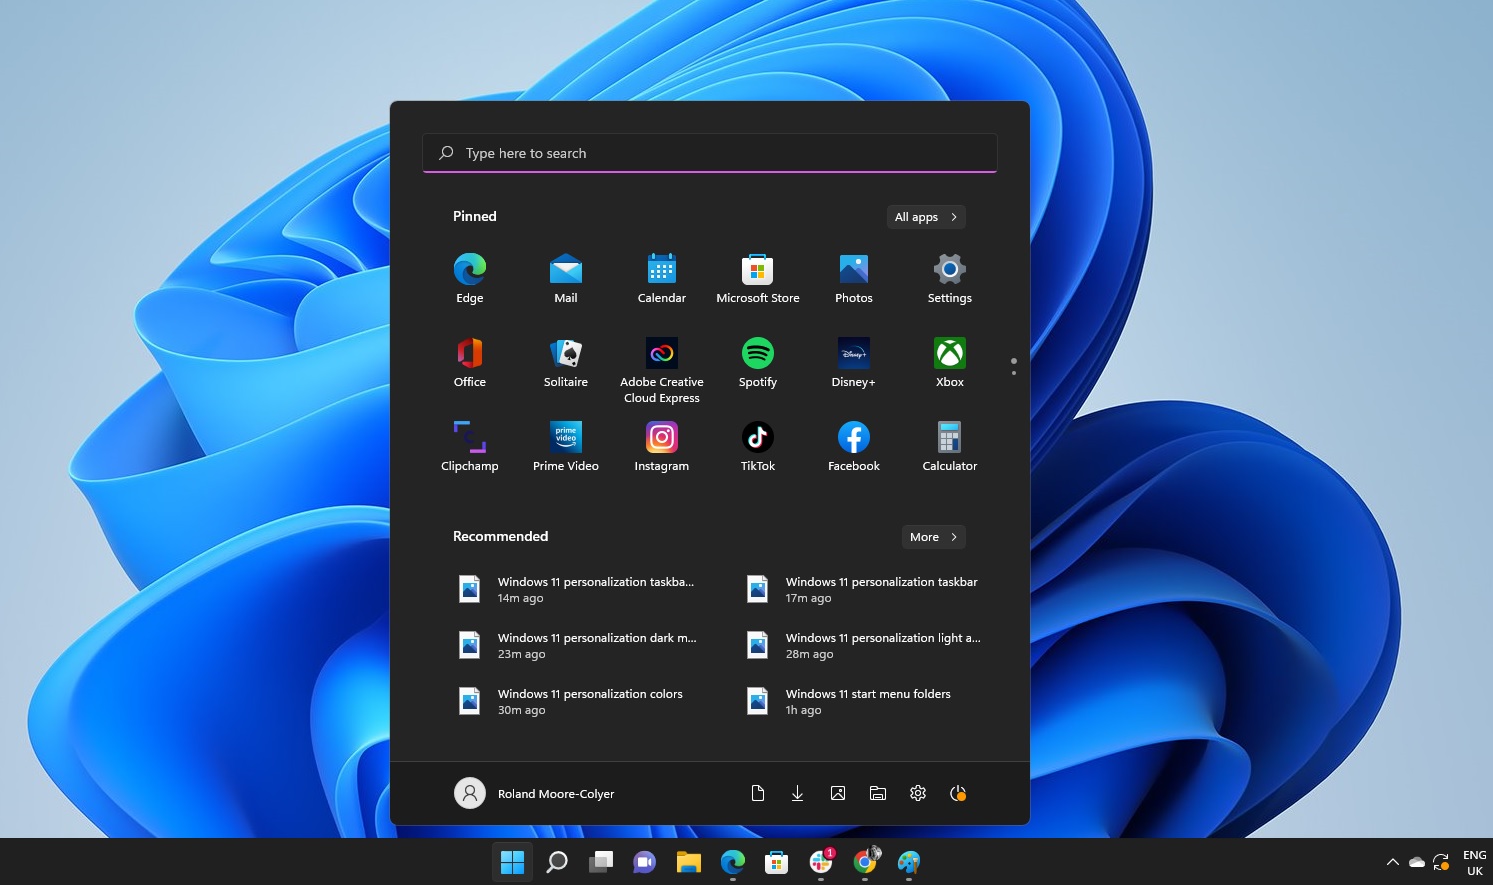 Windows 11 Taskbar Features And Customization Options